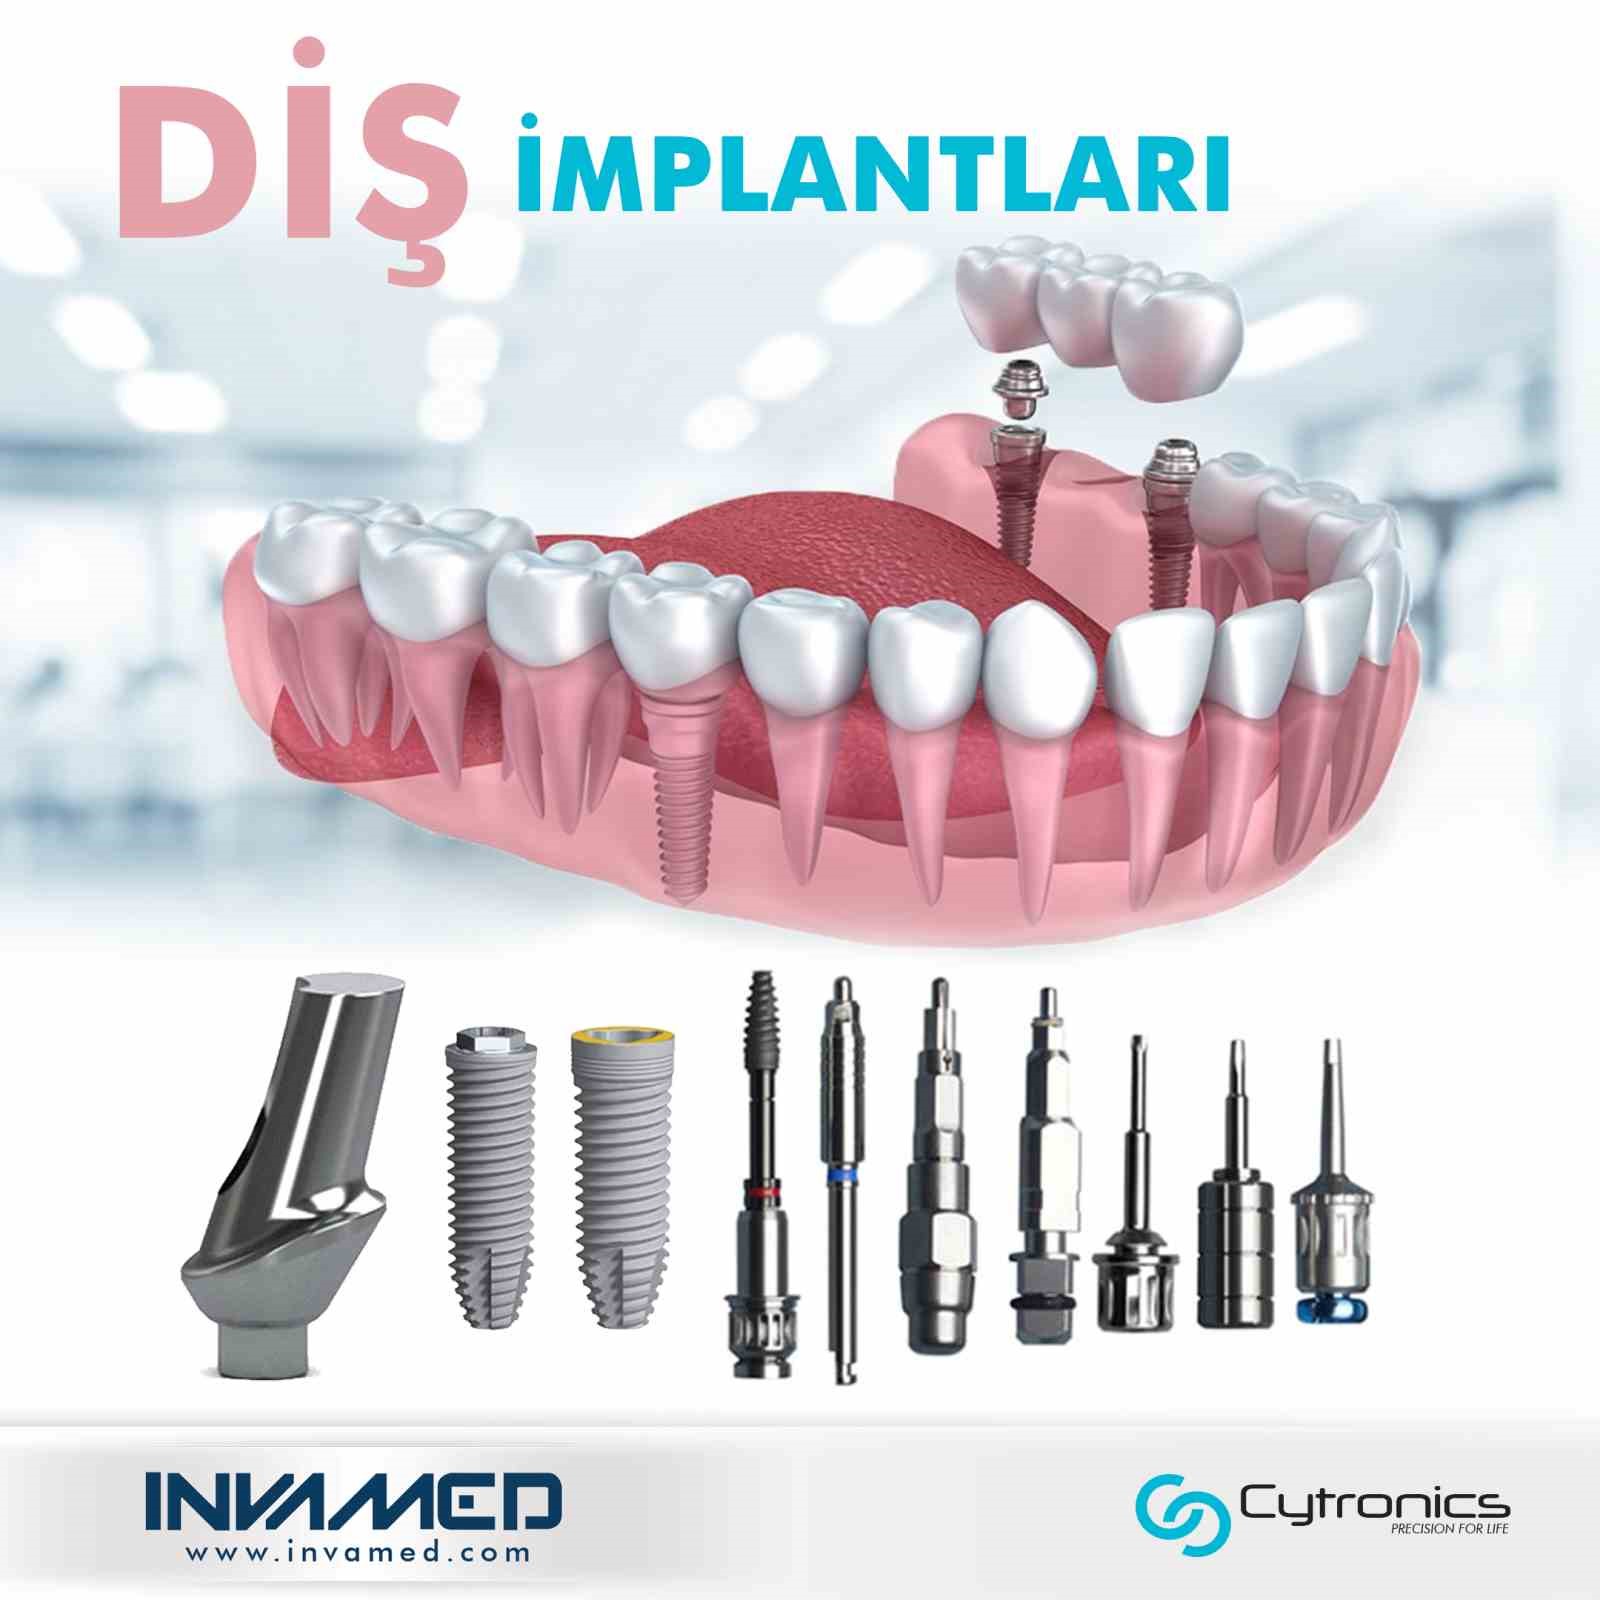 Türkiye’nin dünya çapında tanıttığı yenilik: INVAMED diş implantları